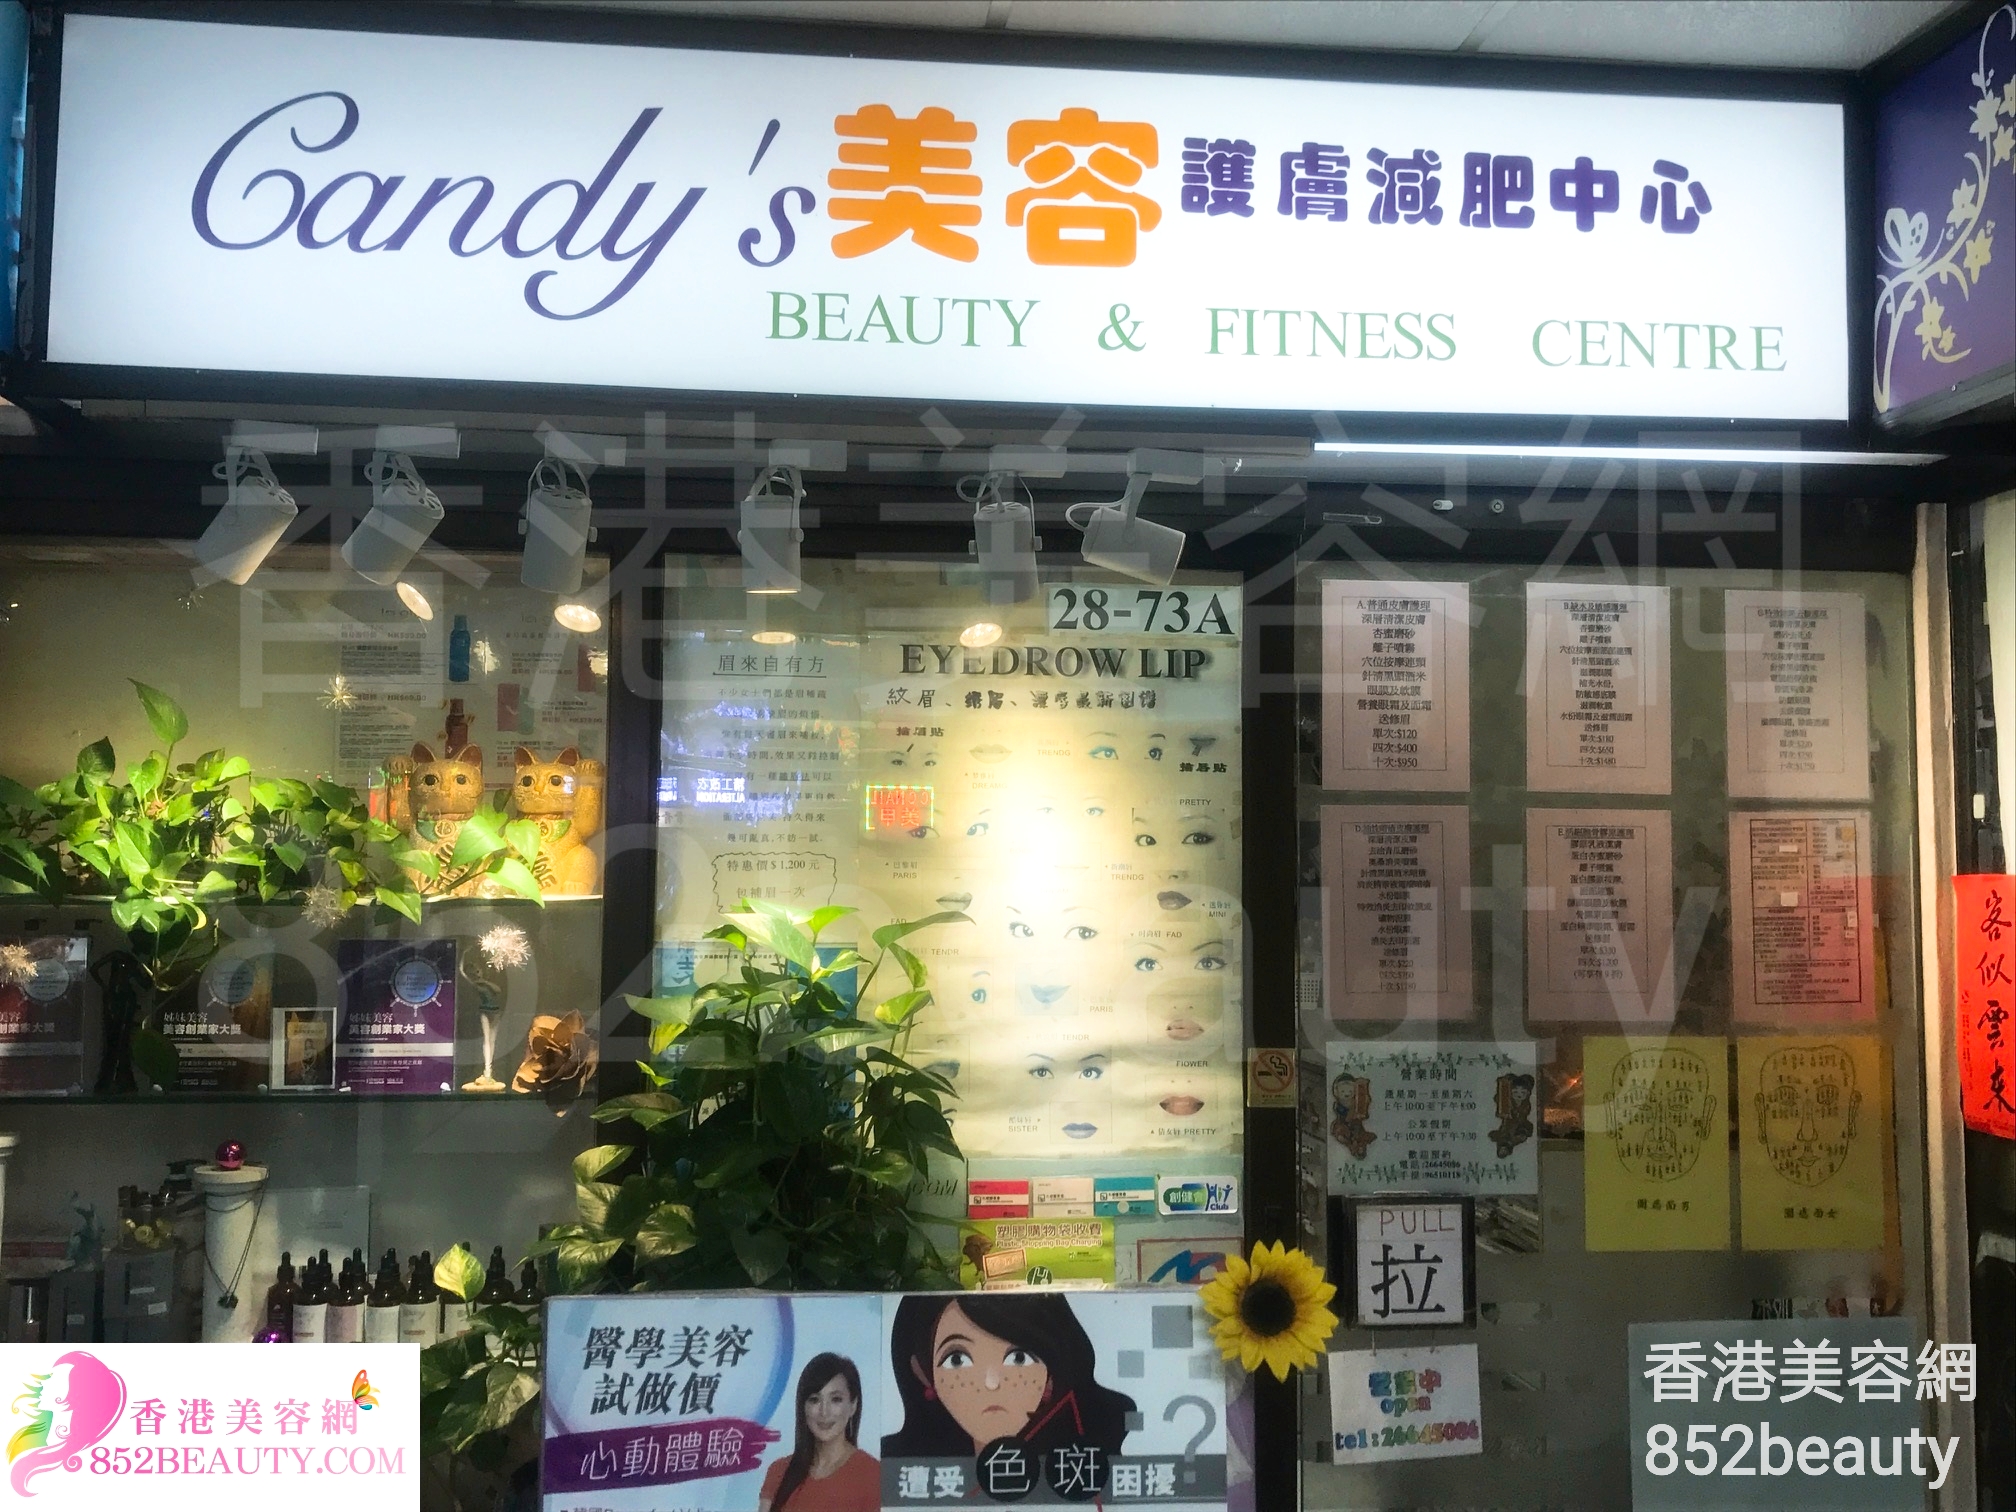 醫學美容: Candy's 美容護膚減肥中心